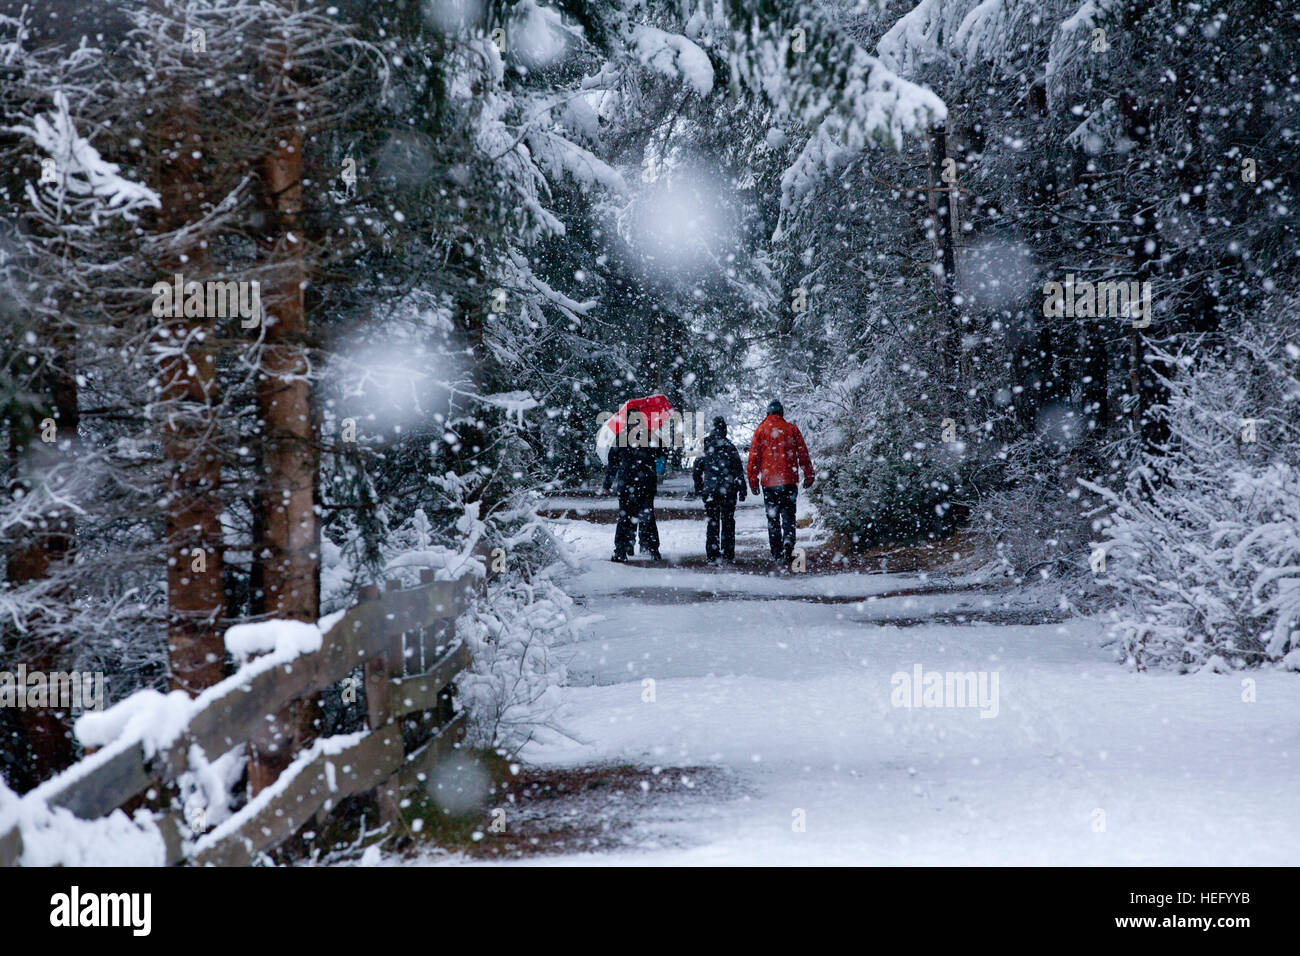 Winterwanderung im Wald bei Schneefall Stock Photo